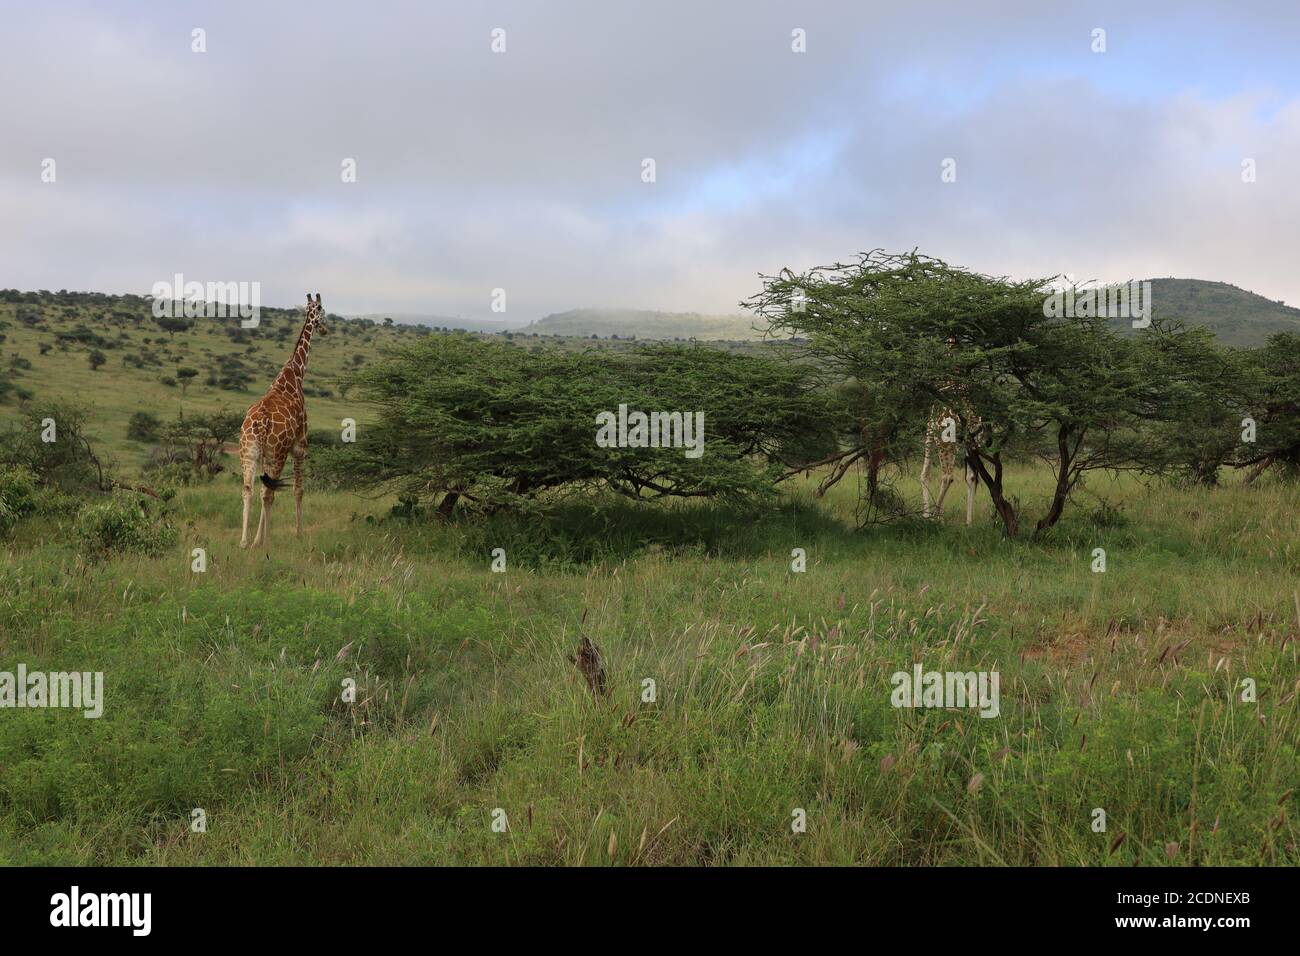 Eine anmutige Giraffe, die ihren Hals ausstreckt, um Akazienblätter zu durchstöbern. Stockfoto